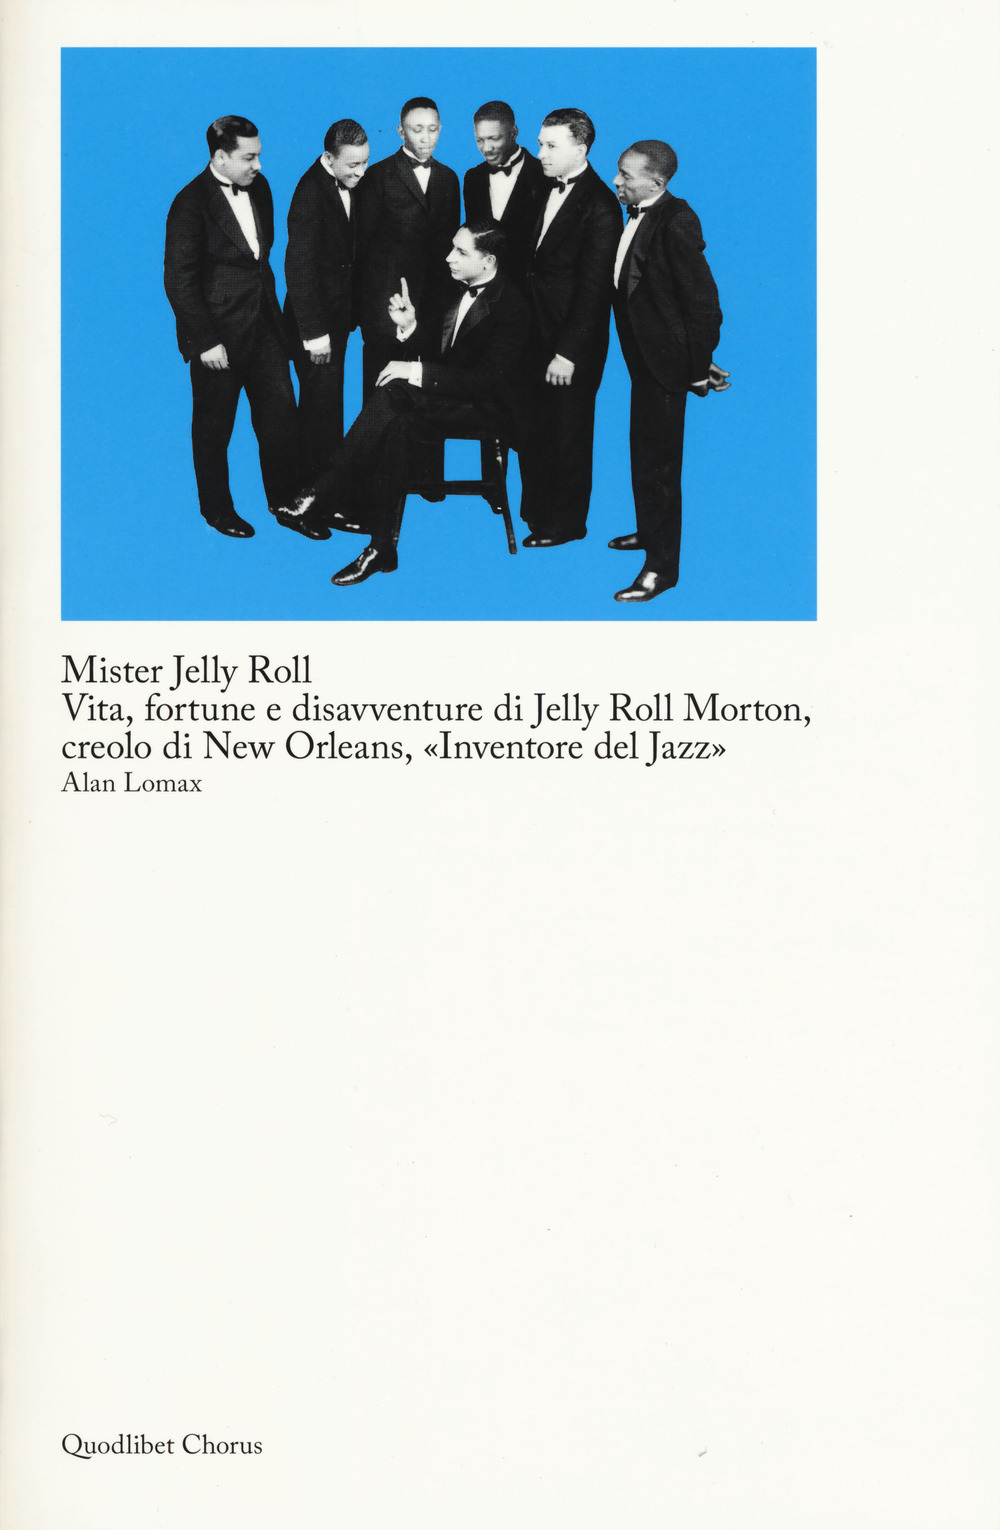 Libri Alan Lomax - Mister Jelly Roll. Vita, Fortune E Disavventure Jelly Roll Morton, Creolo Di New Orleans, Inventore Del Jazz NUOVO SIGILLATO, EDIZIONE DEL 09/05/2019 SUBITO DISPONIBILE